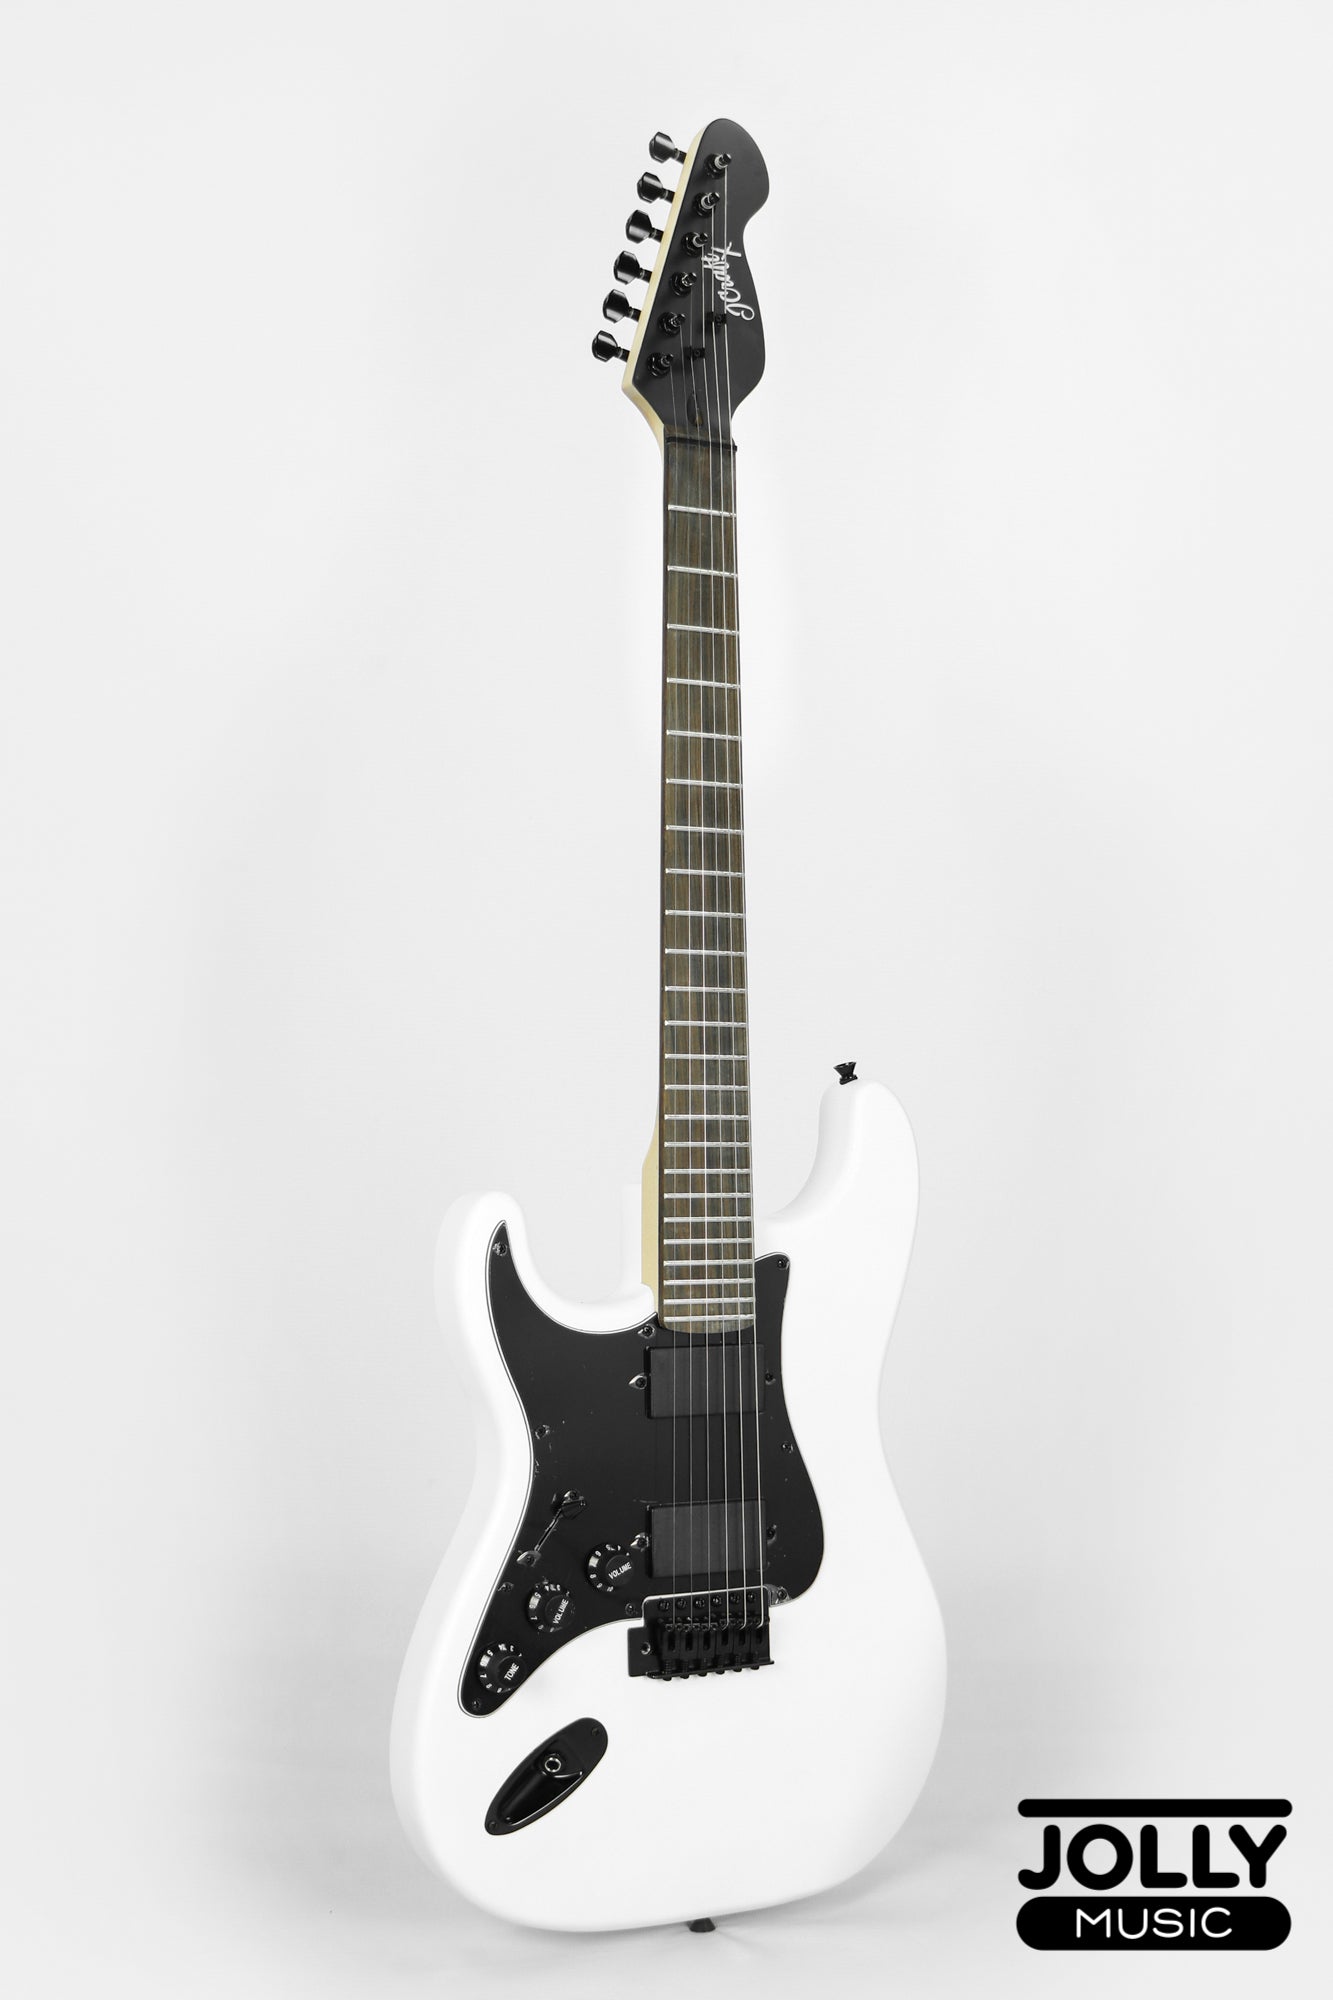 JCraft X Series LSX-1 LEFT HAND HH Modern S-Style Electric Guitar - Snow